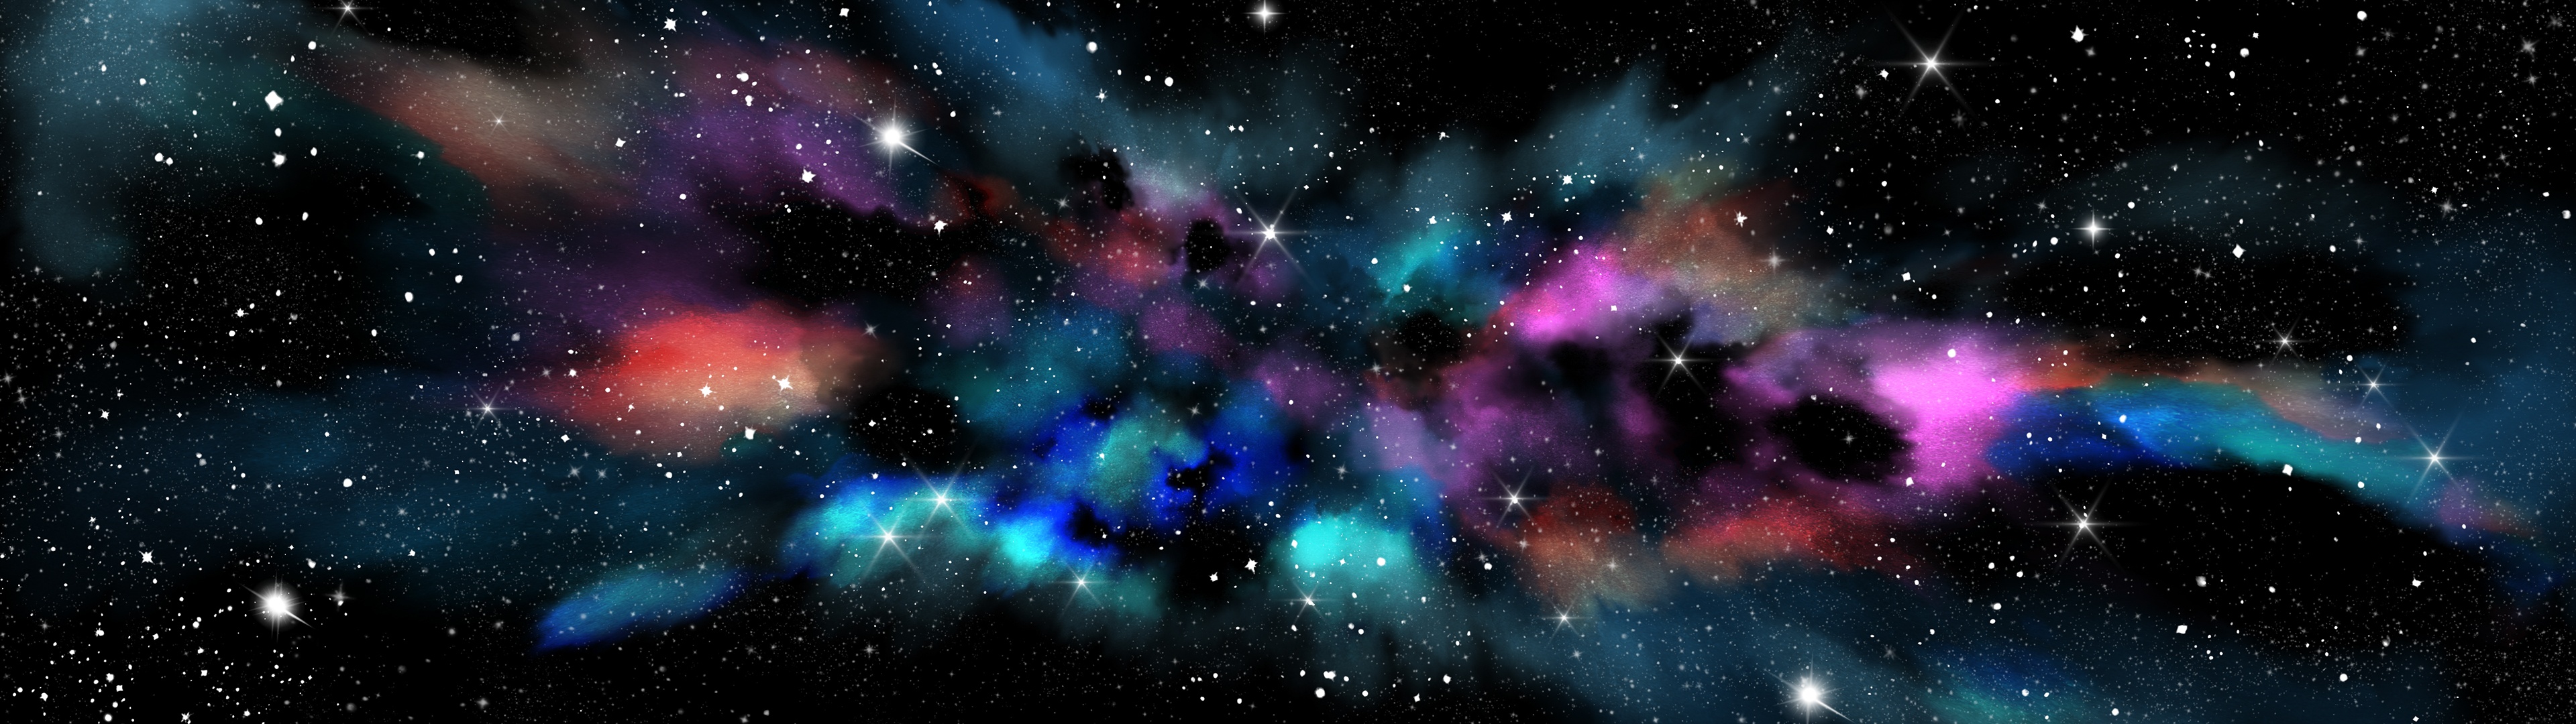 Ngân hà - Hãy khám phá thế giới đầy kỳ diệu và bí ẩn của ngân hà, nơi hàng trăm ngàn triệu sao lấp lánh như những viên kim cương trên bầu trời đầy sao. Đăng ký ngay bây giờ để được làng mập mập trong vô vành khác thường và khám phá những ngôi sao, hành tinh và vật thể bí ẩn khác.